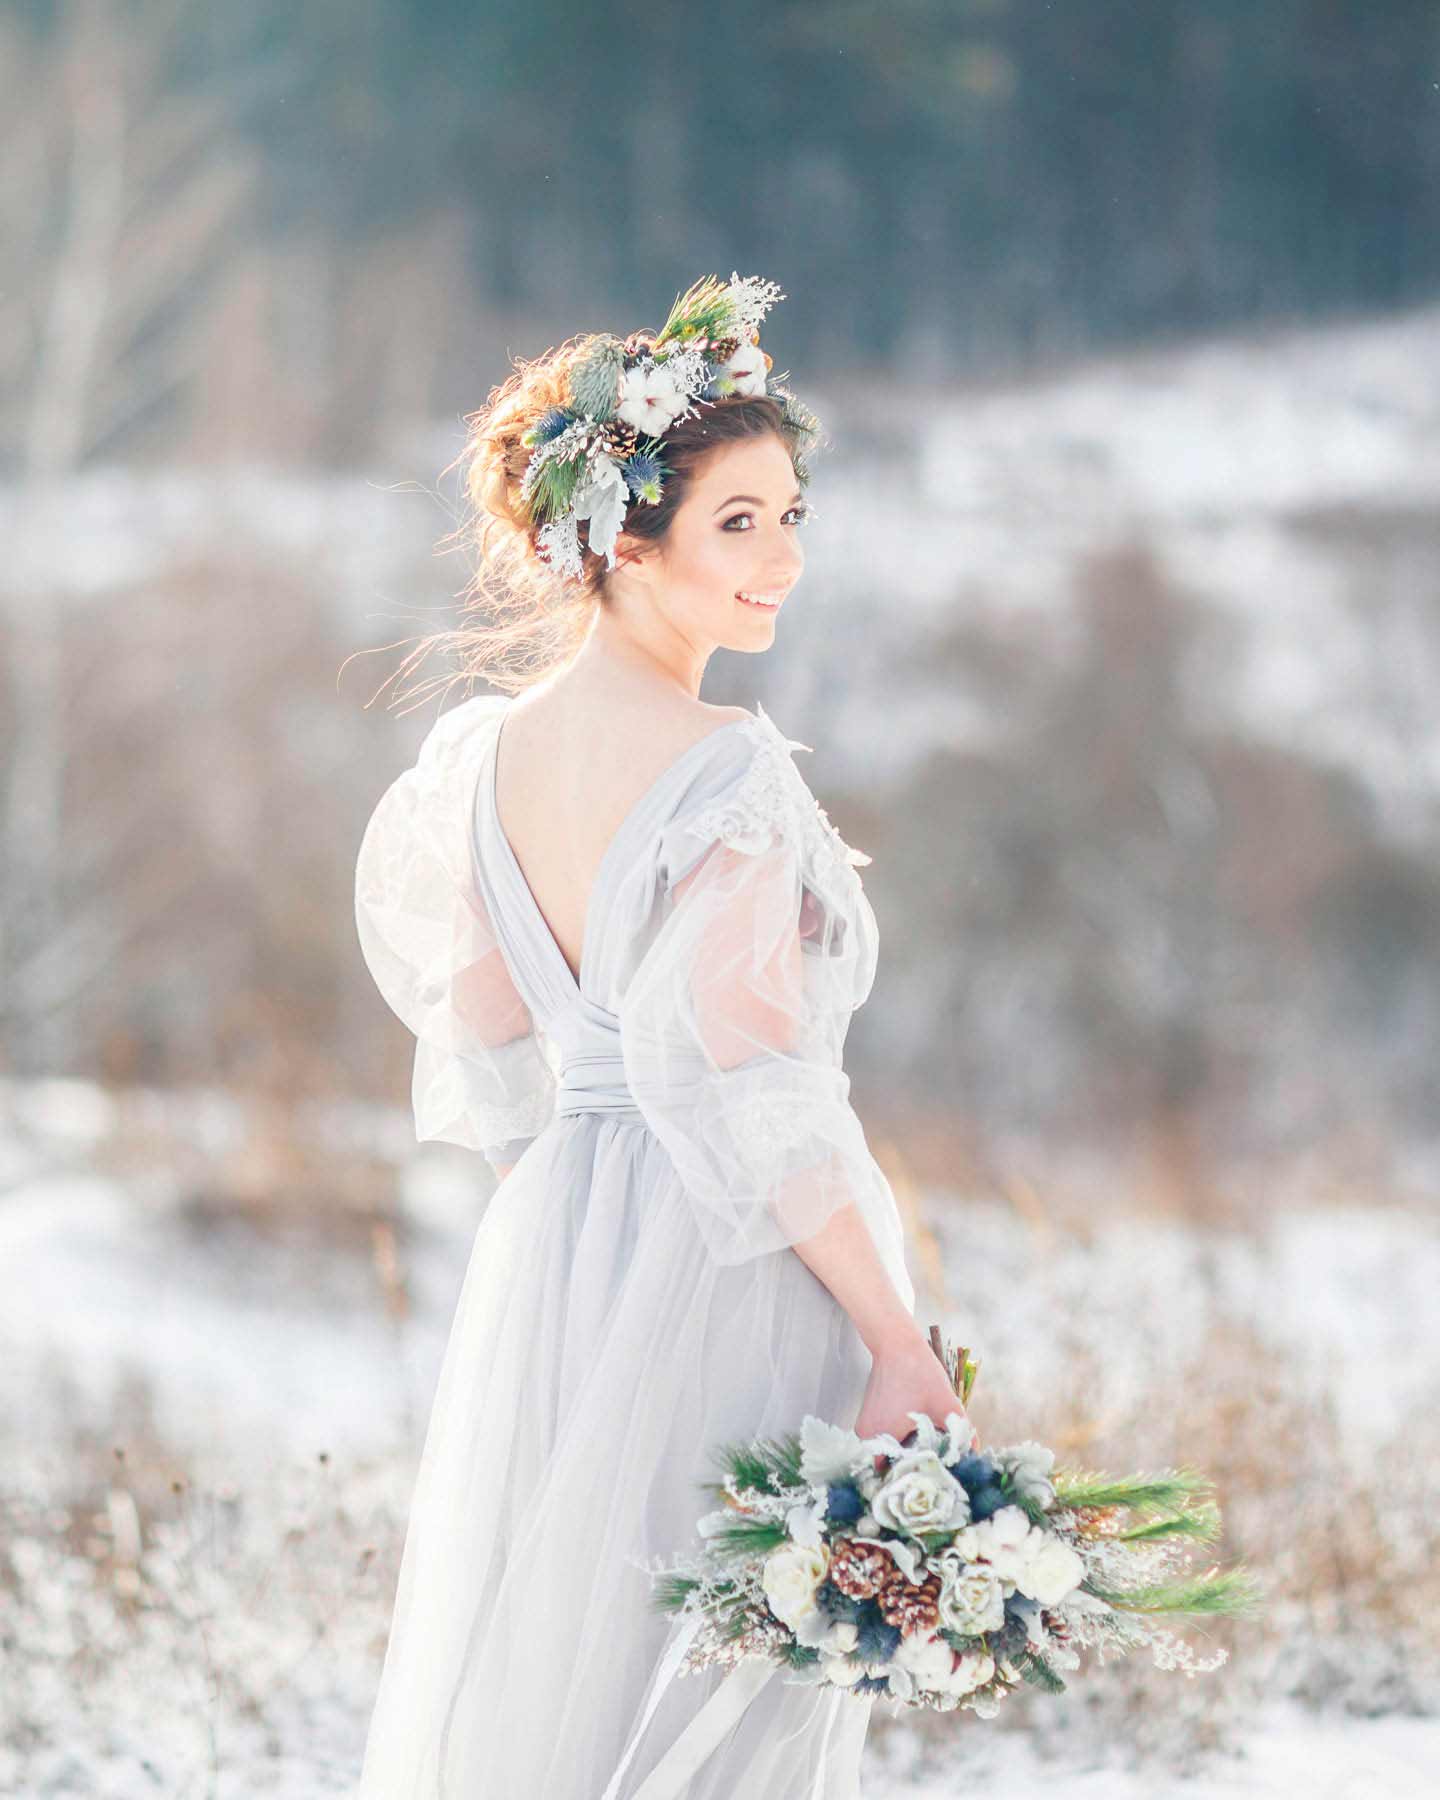 Braut steht vor verschneiter Winterlandschaft mit Braustrauß in der Hand